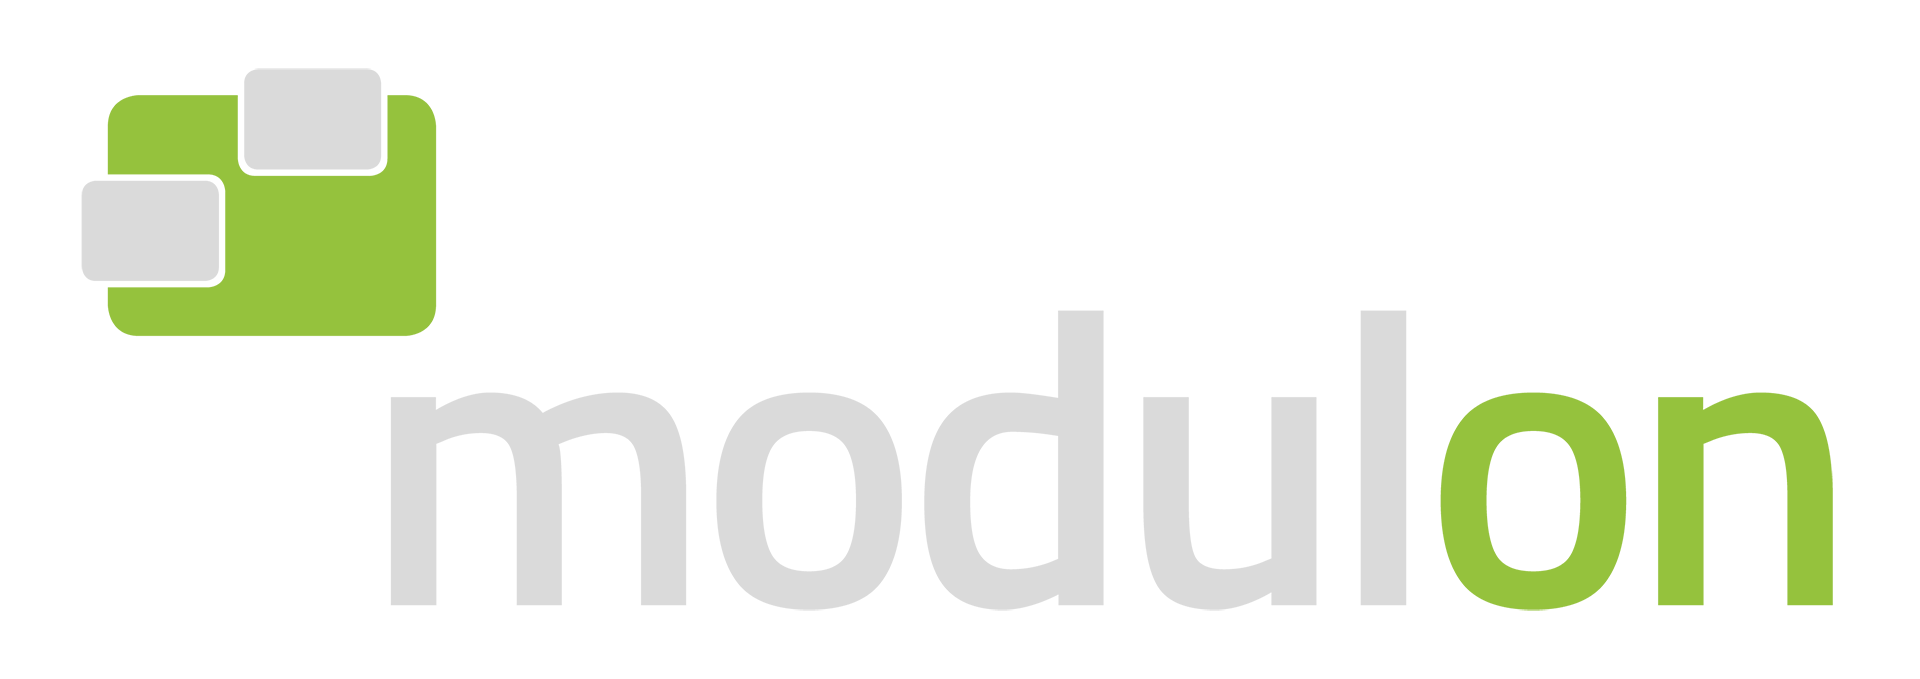 modulon – wir machen es einfach